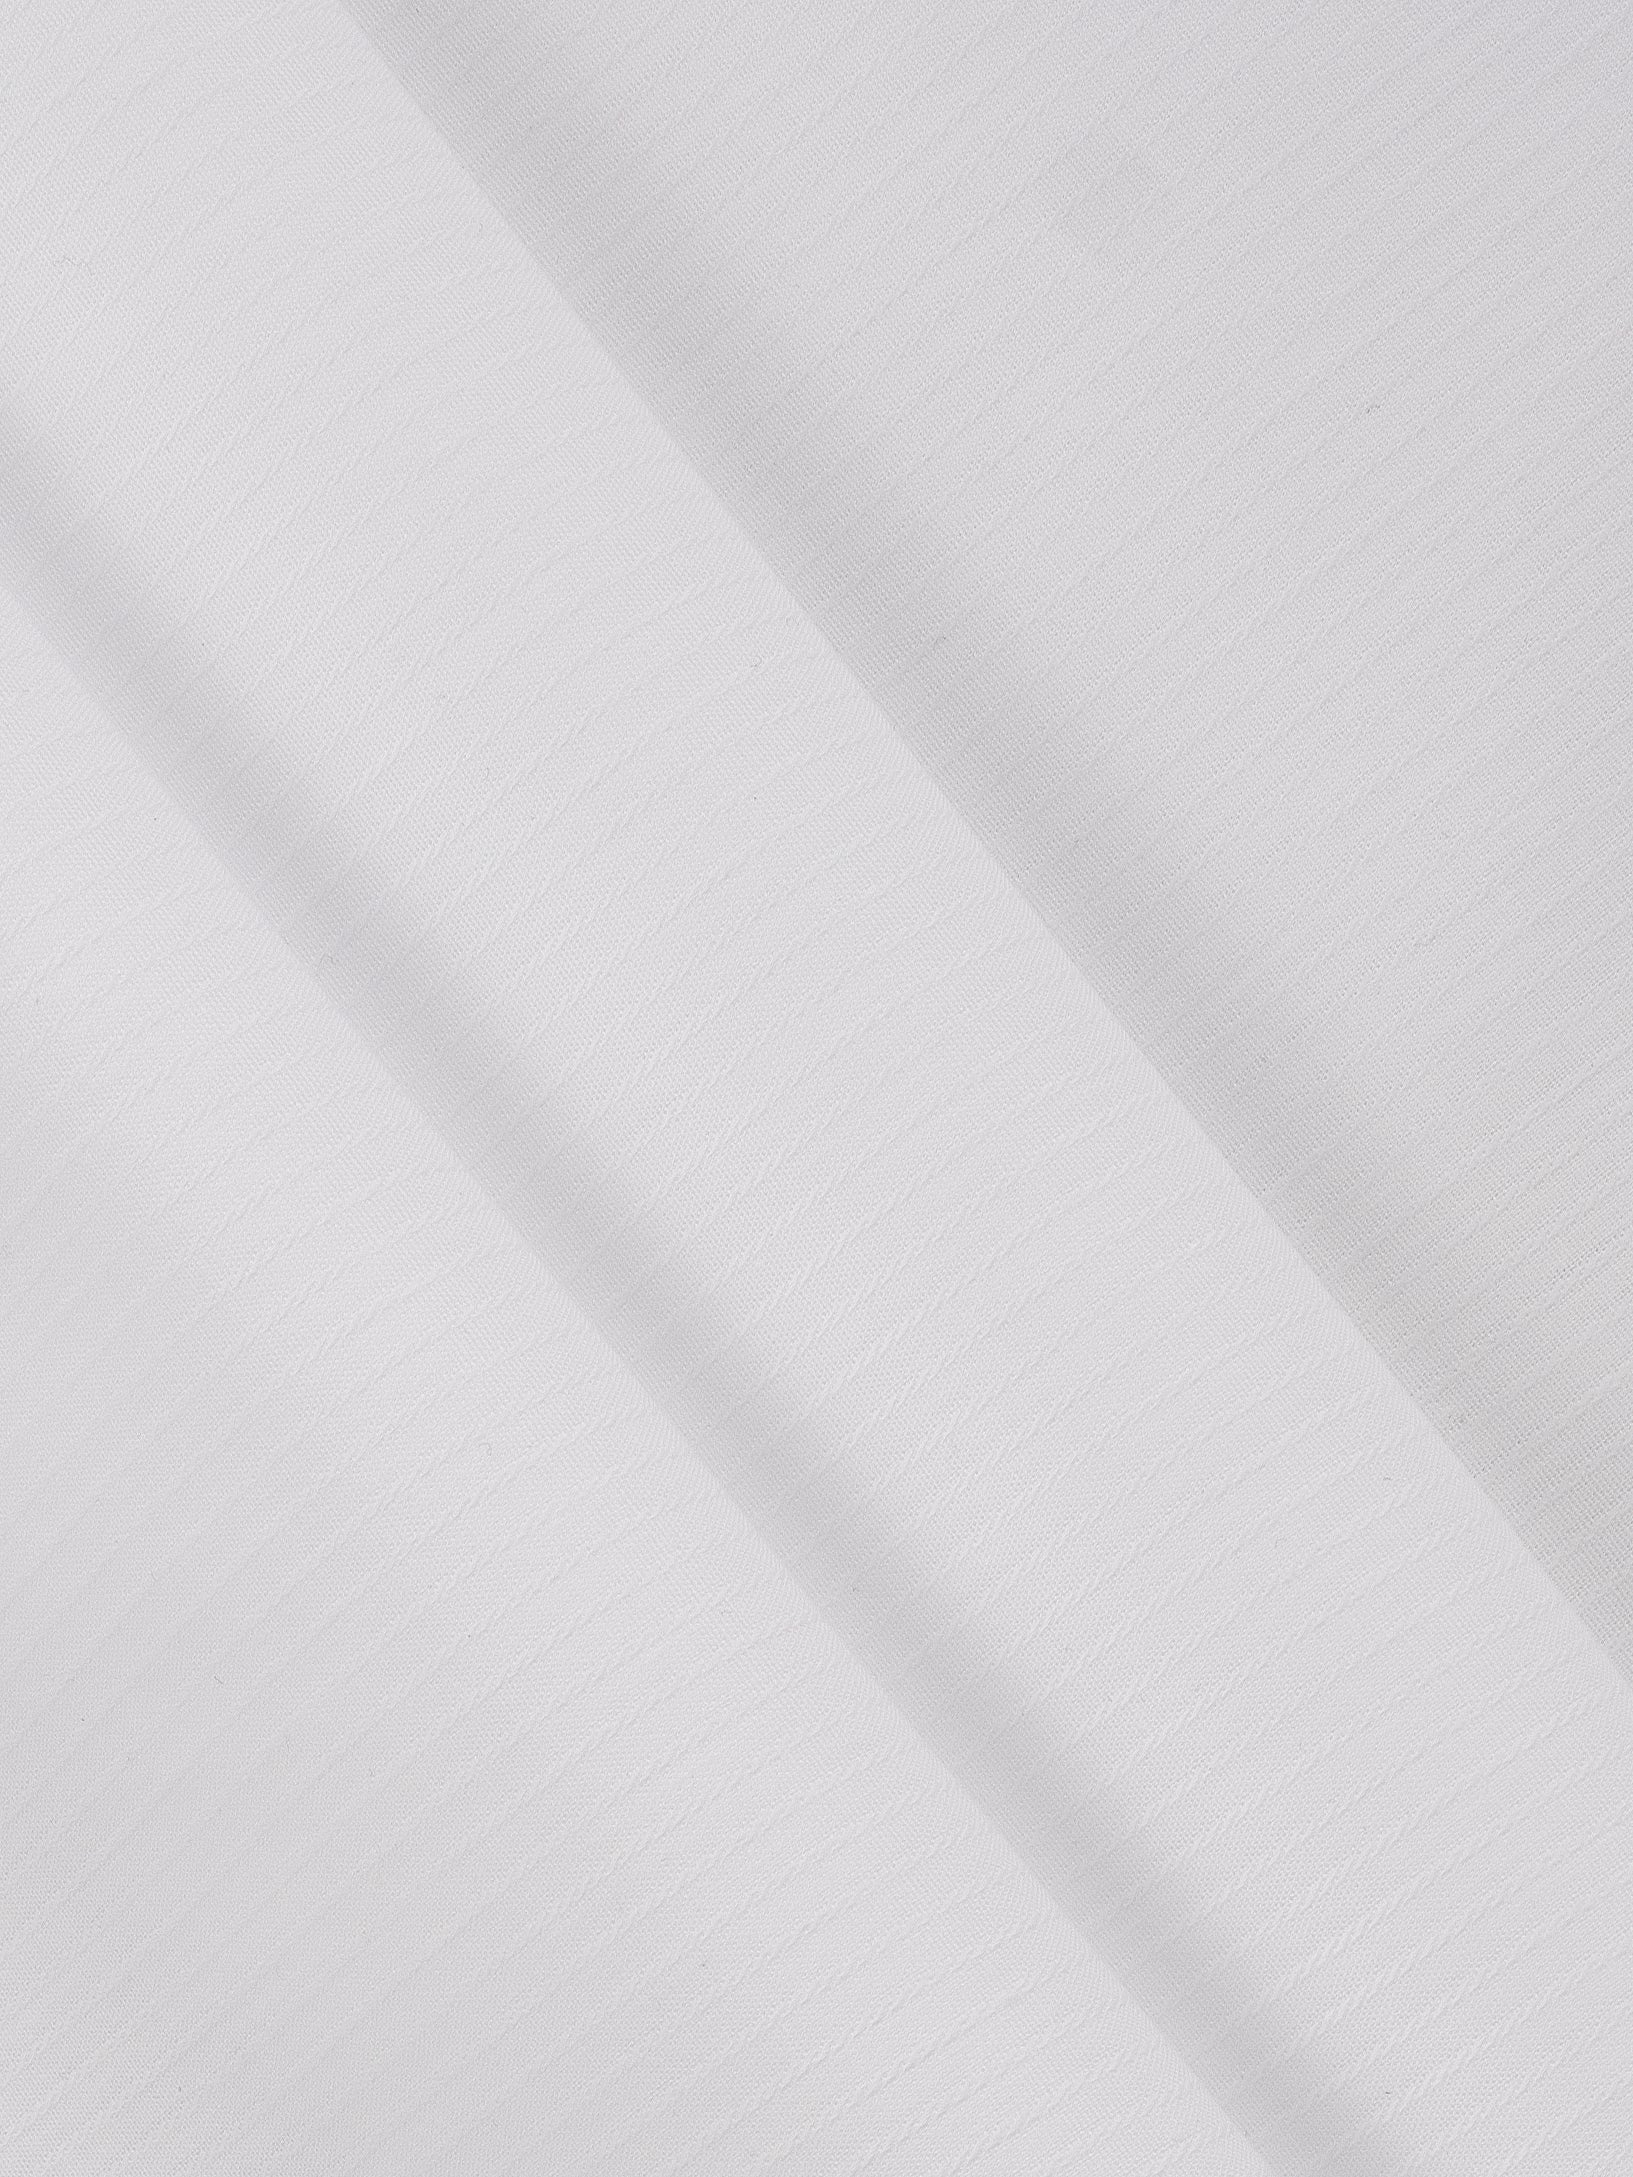 Luxury 100% Cotton White Shirt Fabric 1001-Zoomview